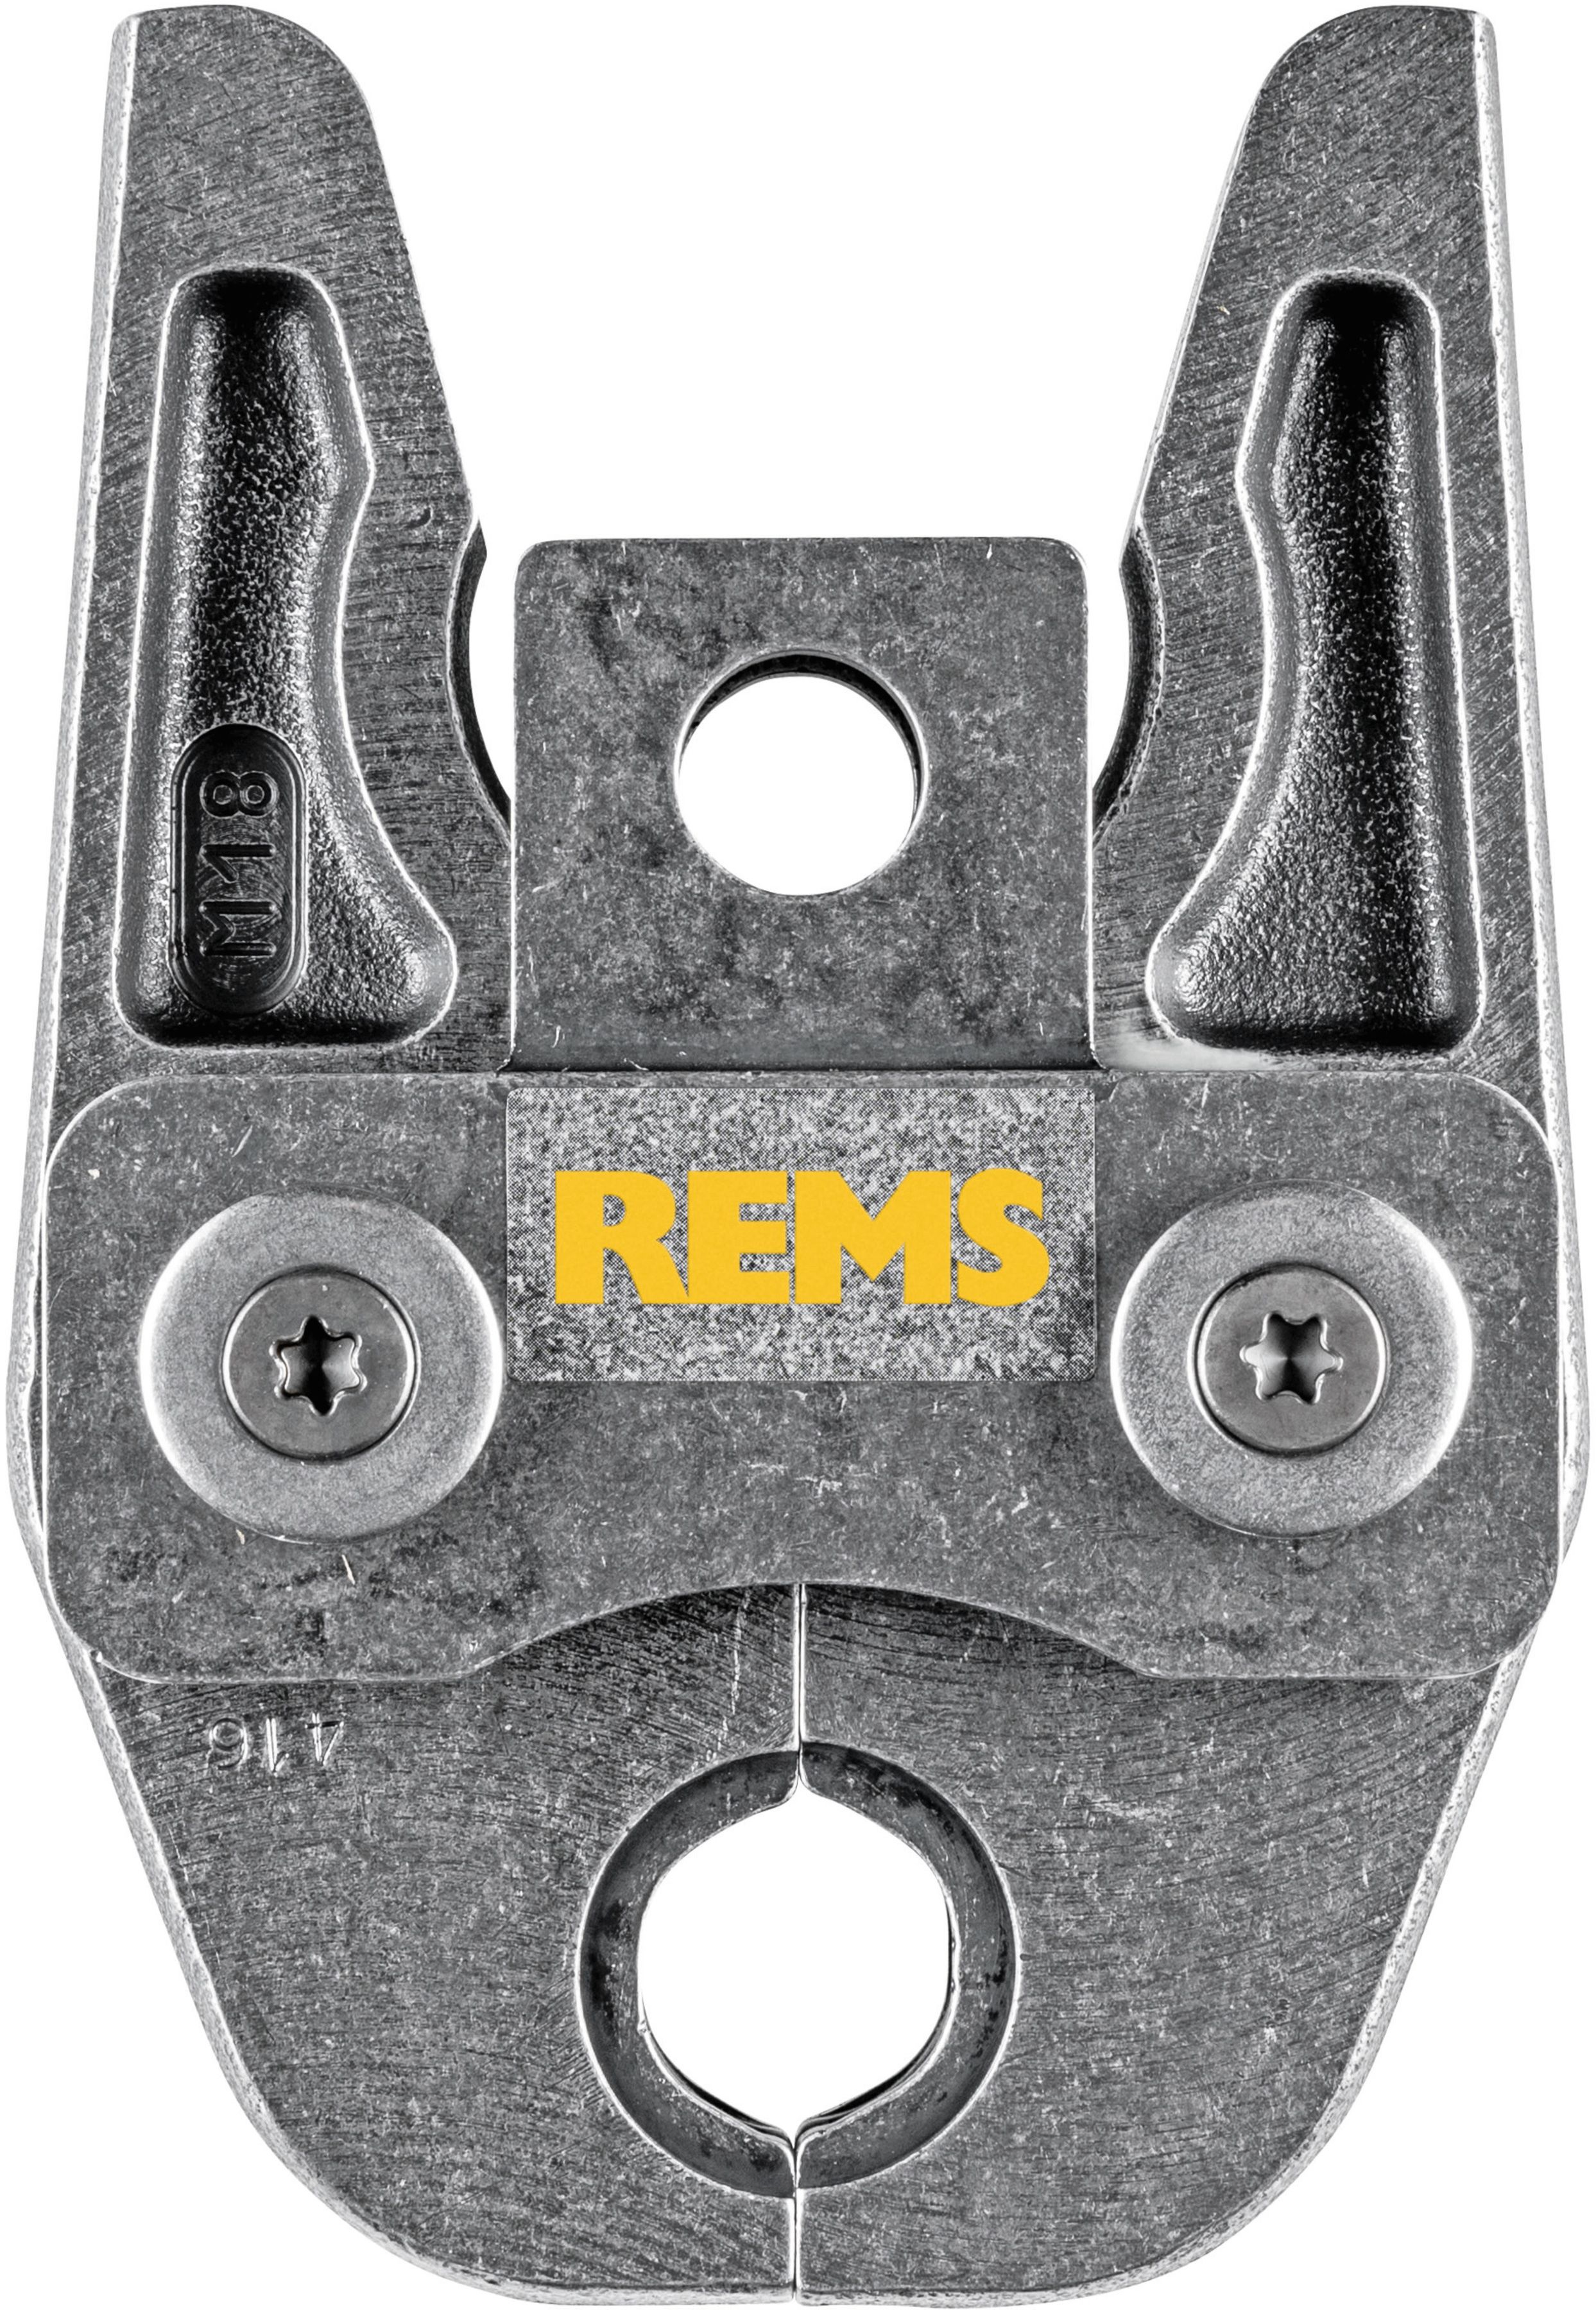 REMS Presszange 570150, M35 - Sanitärwerkzeuge